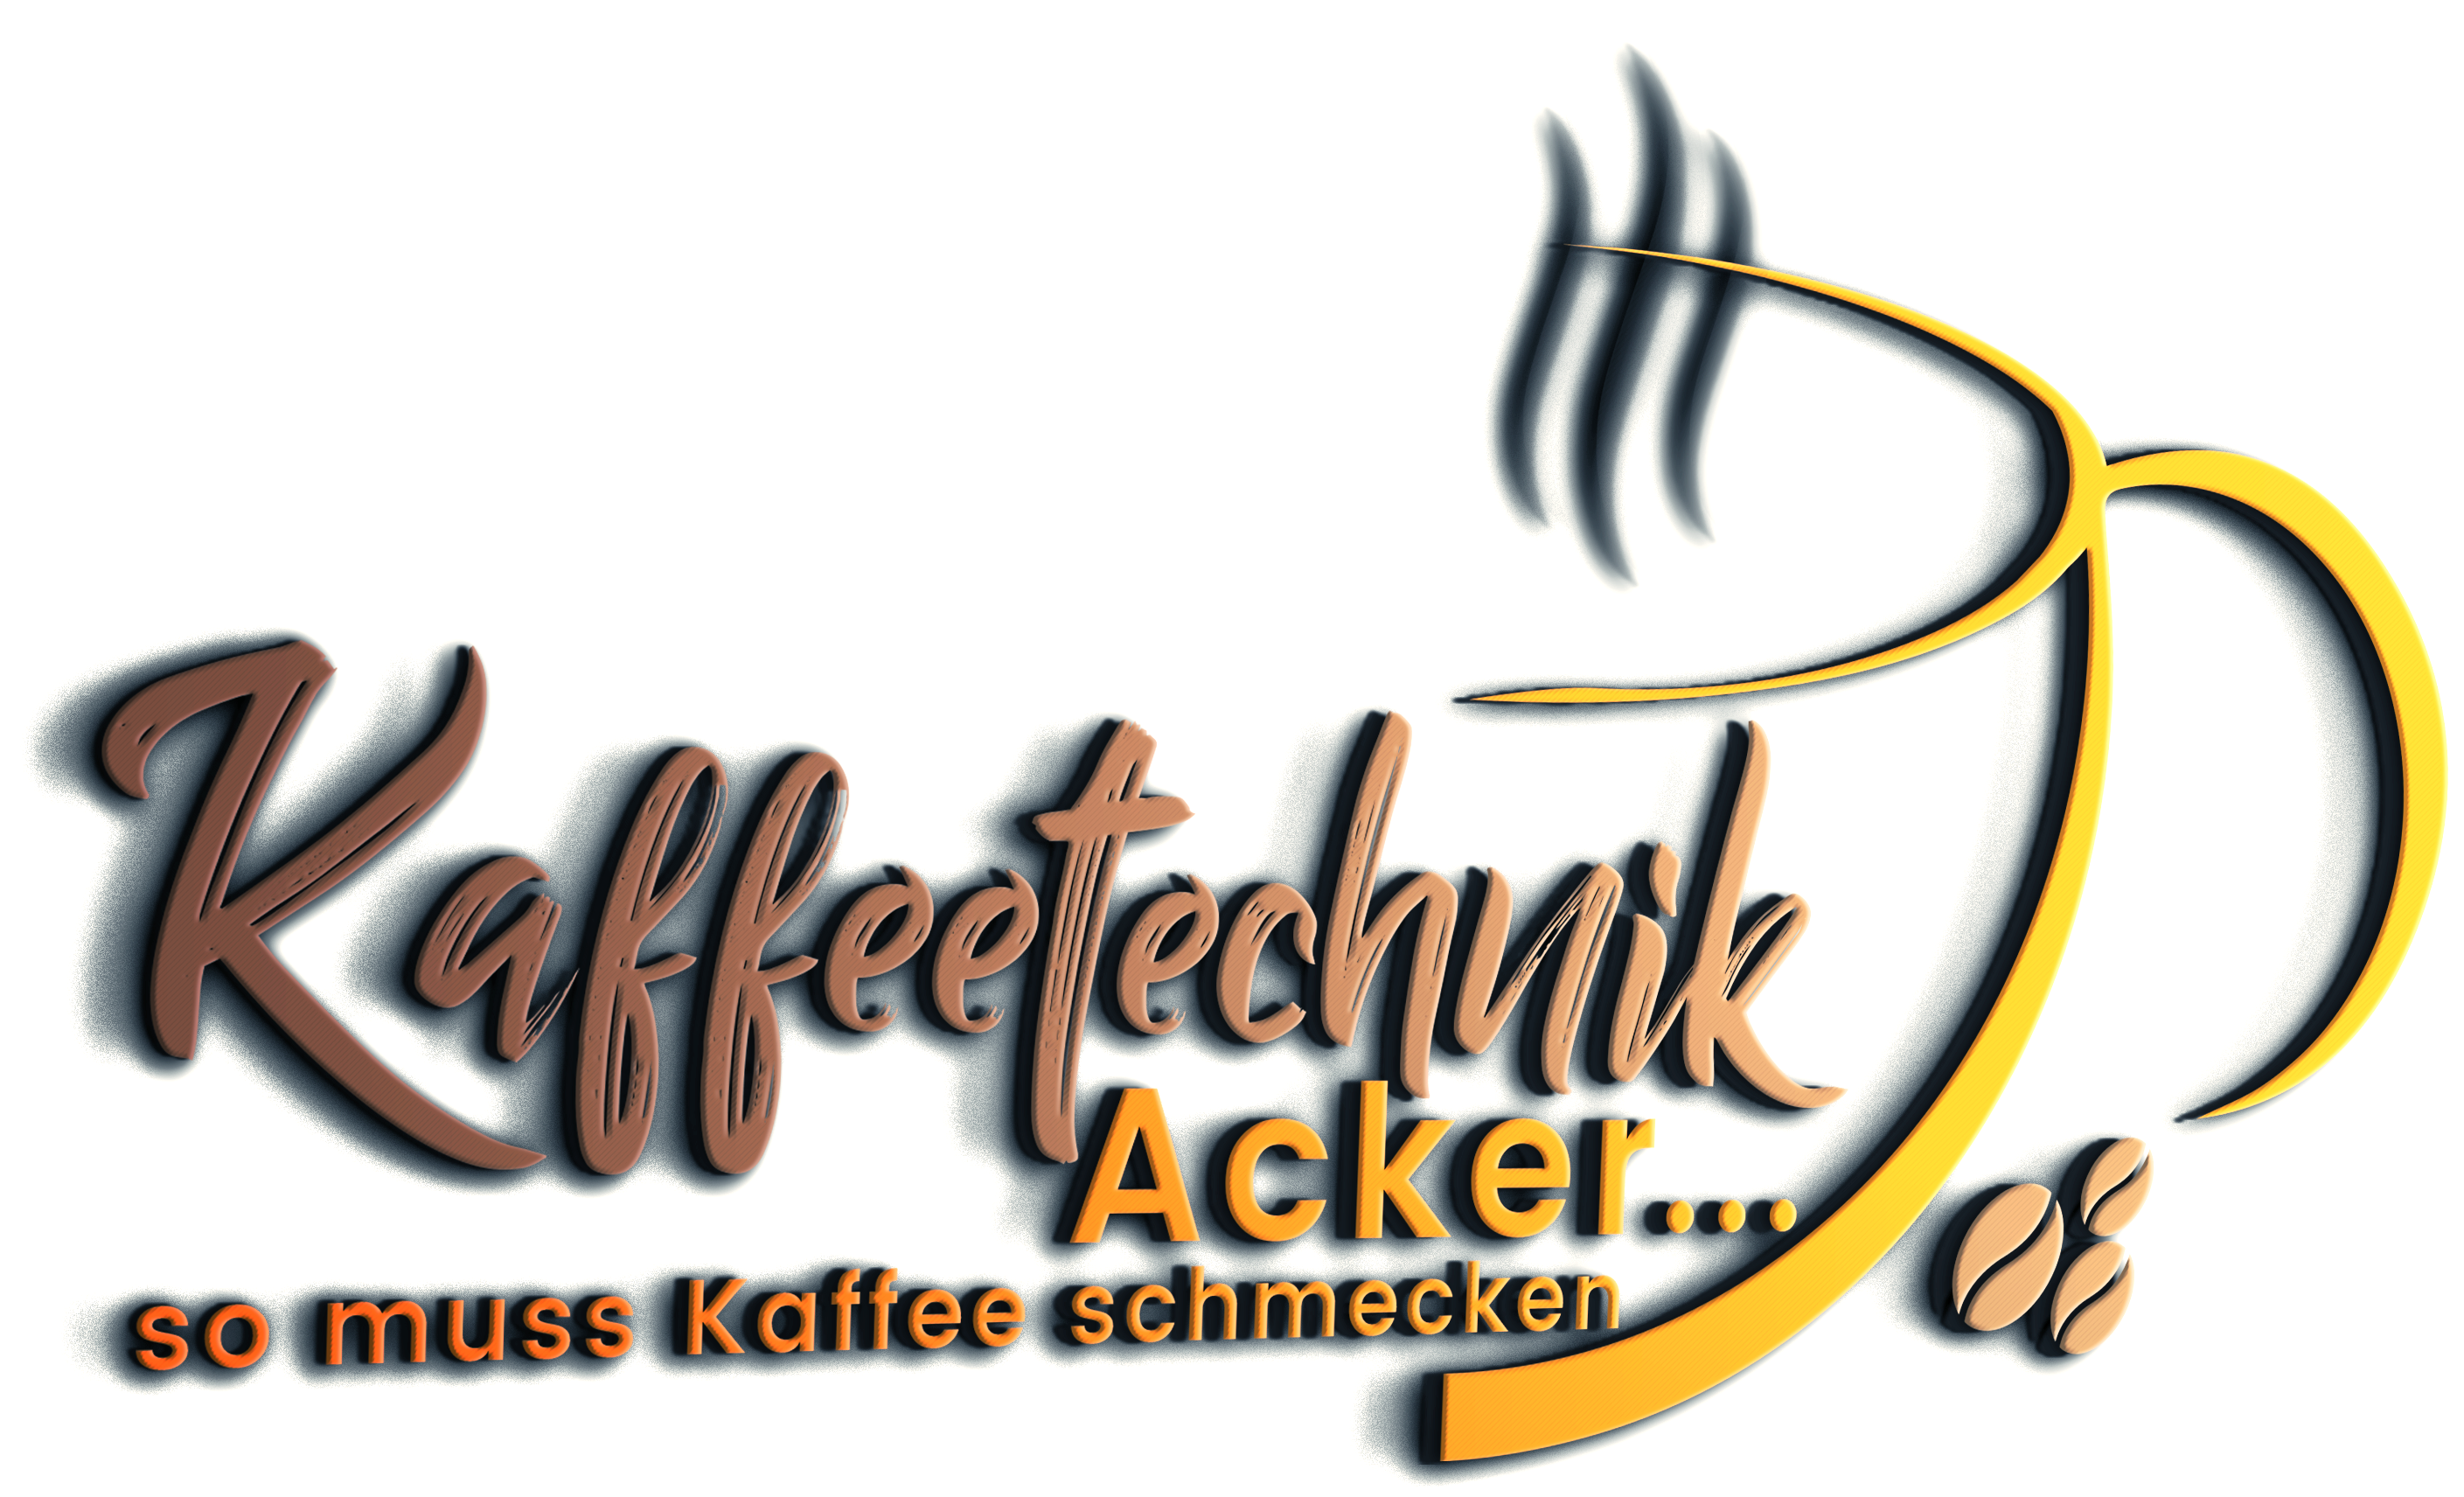 Kaffeetechnik Acker